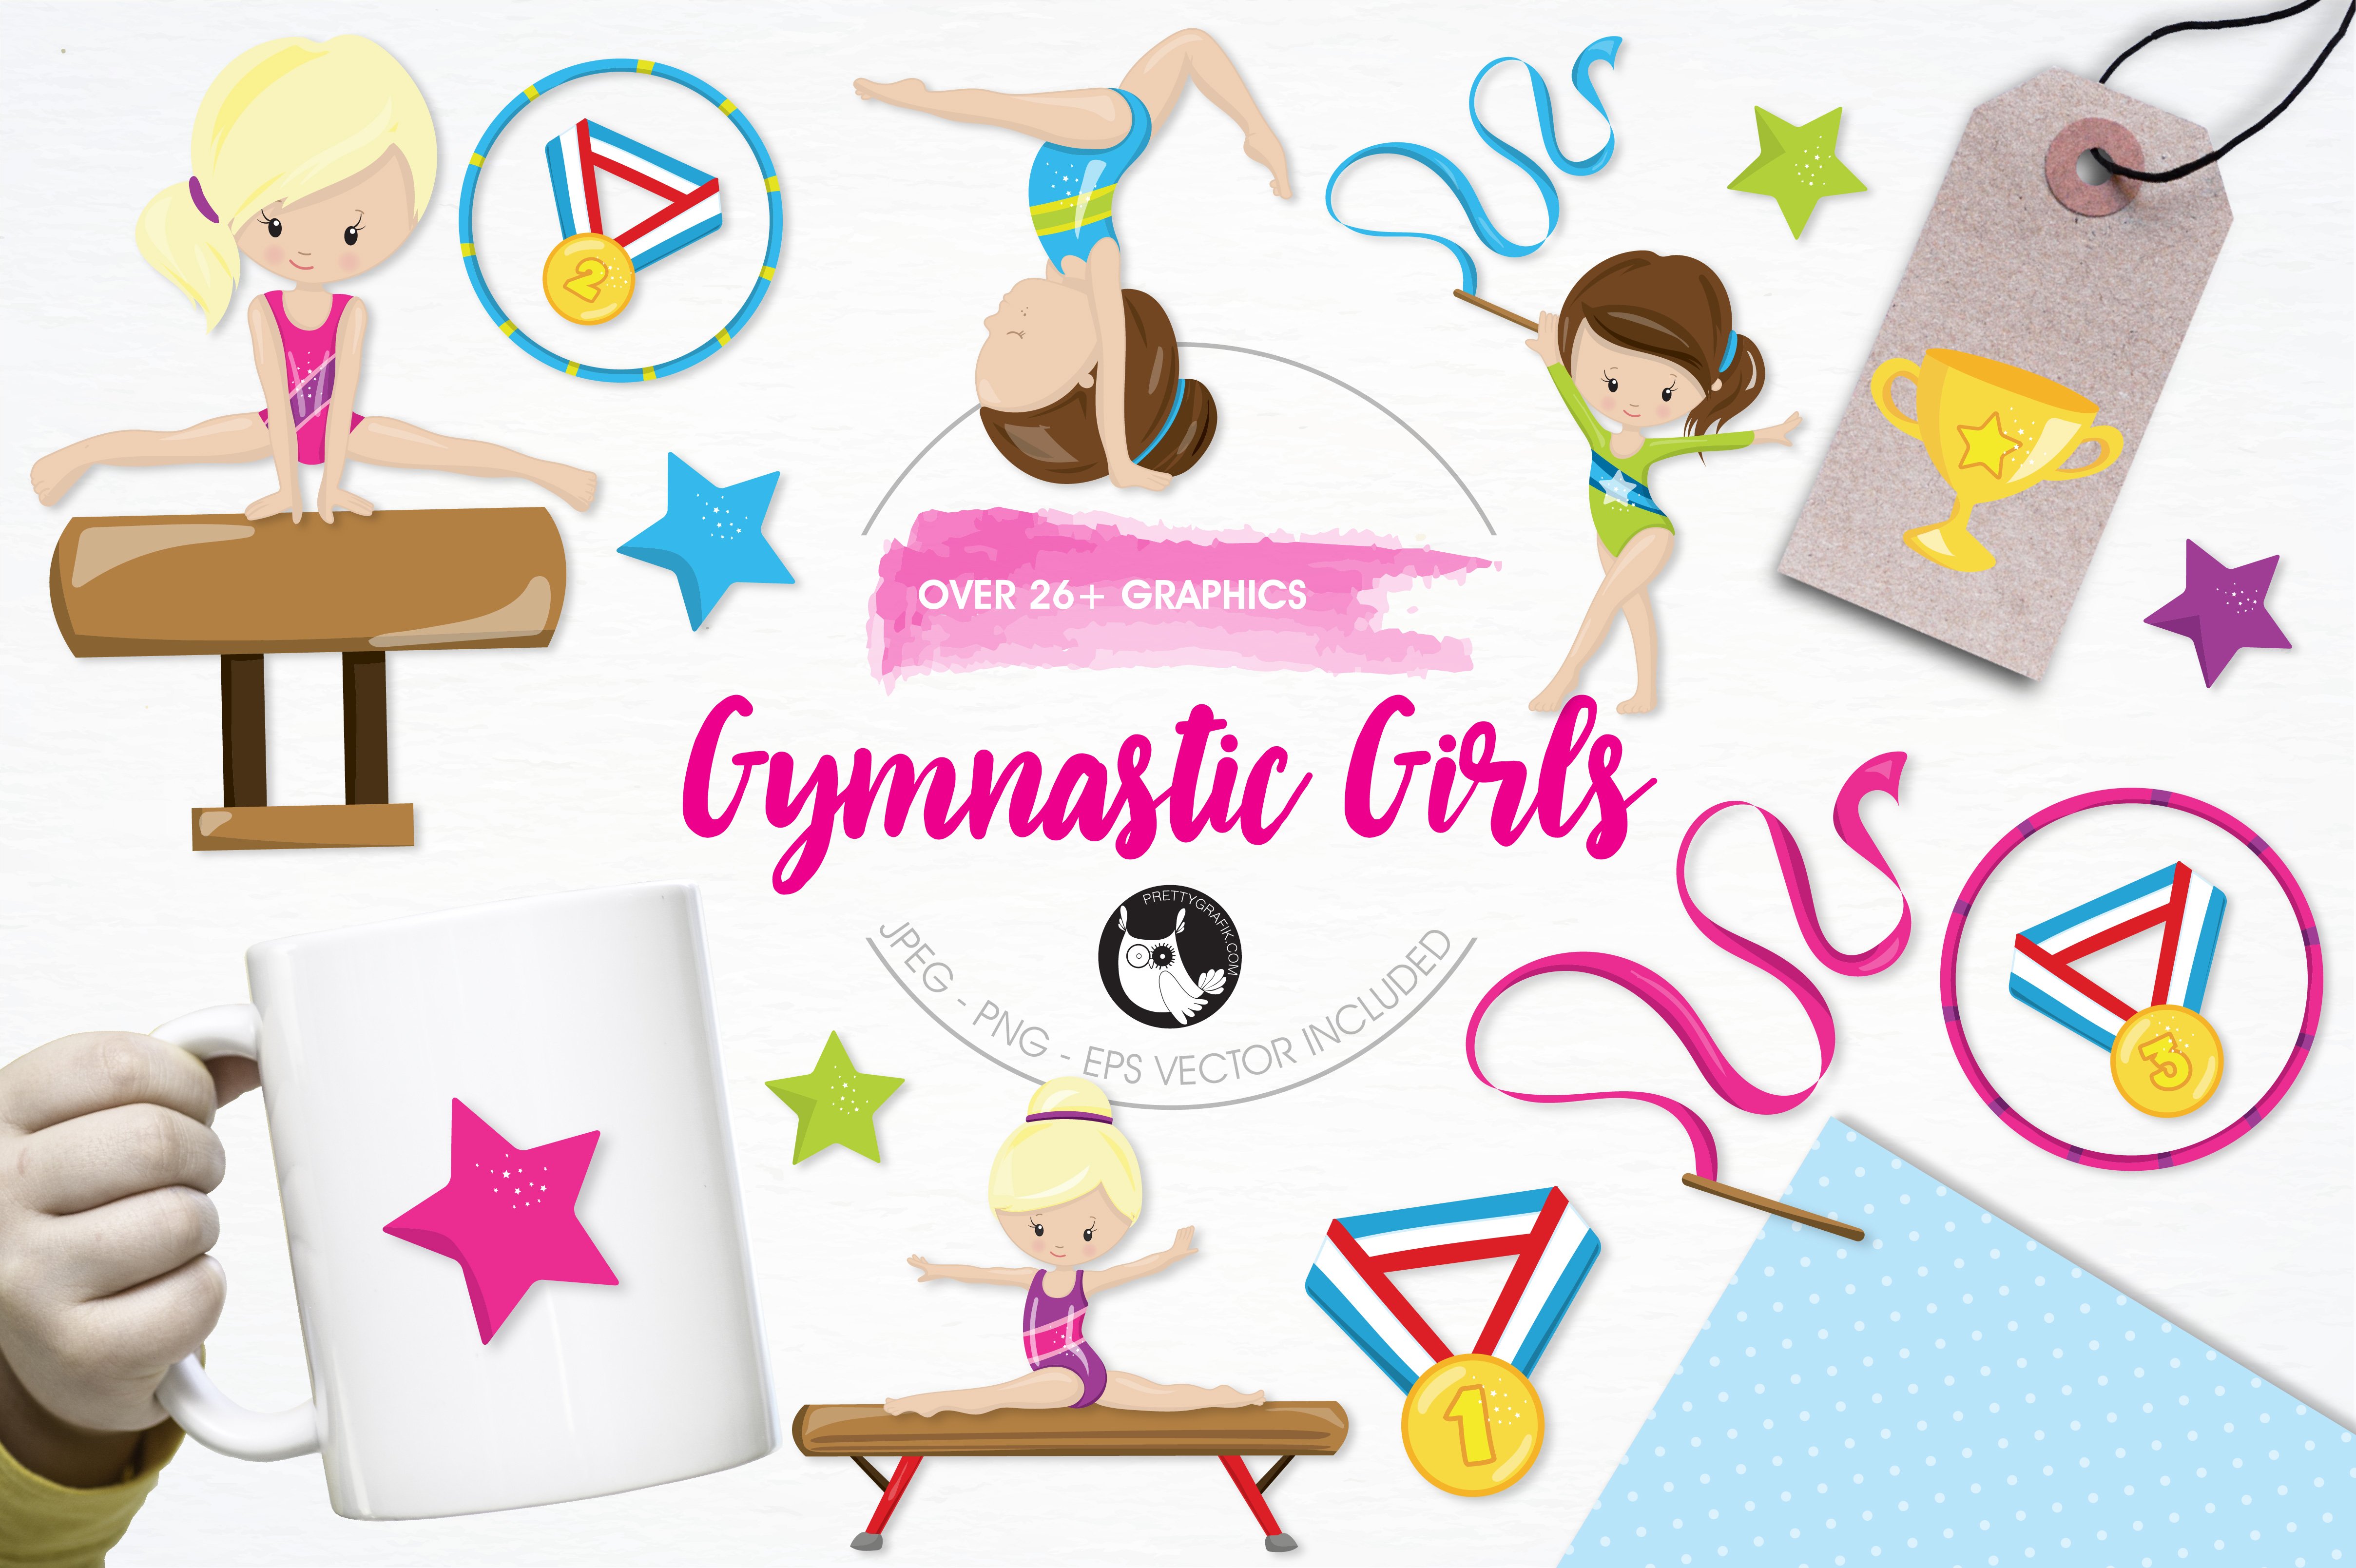 Gymnastic girls illustration pack - Vector Image